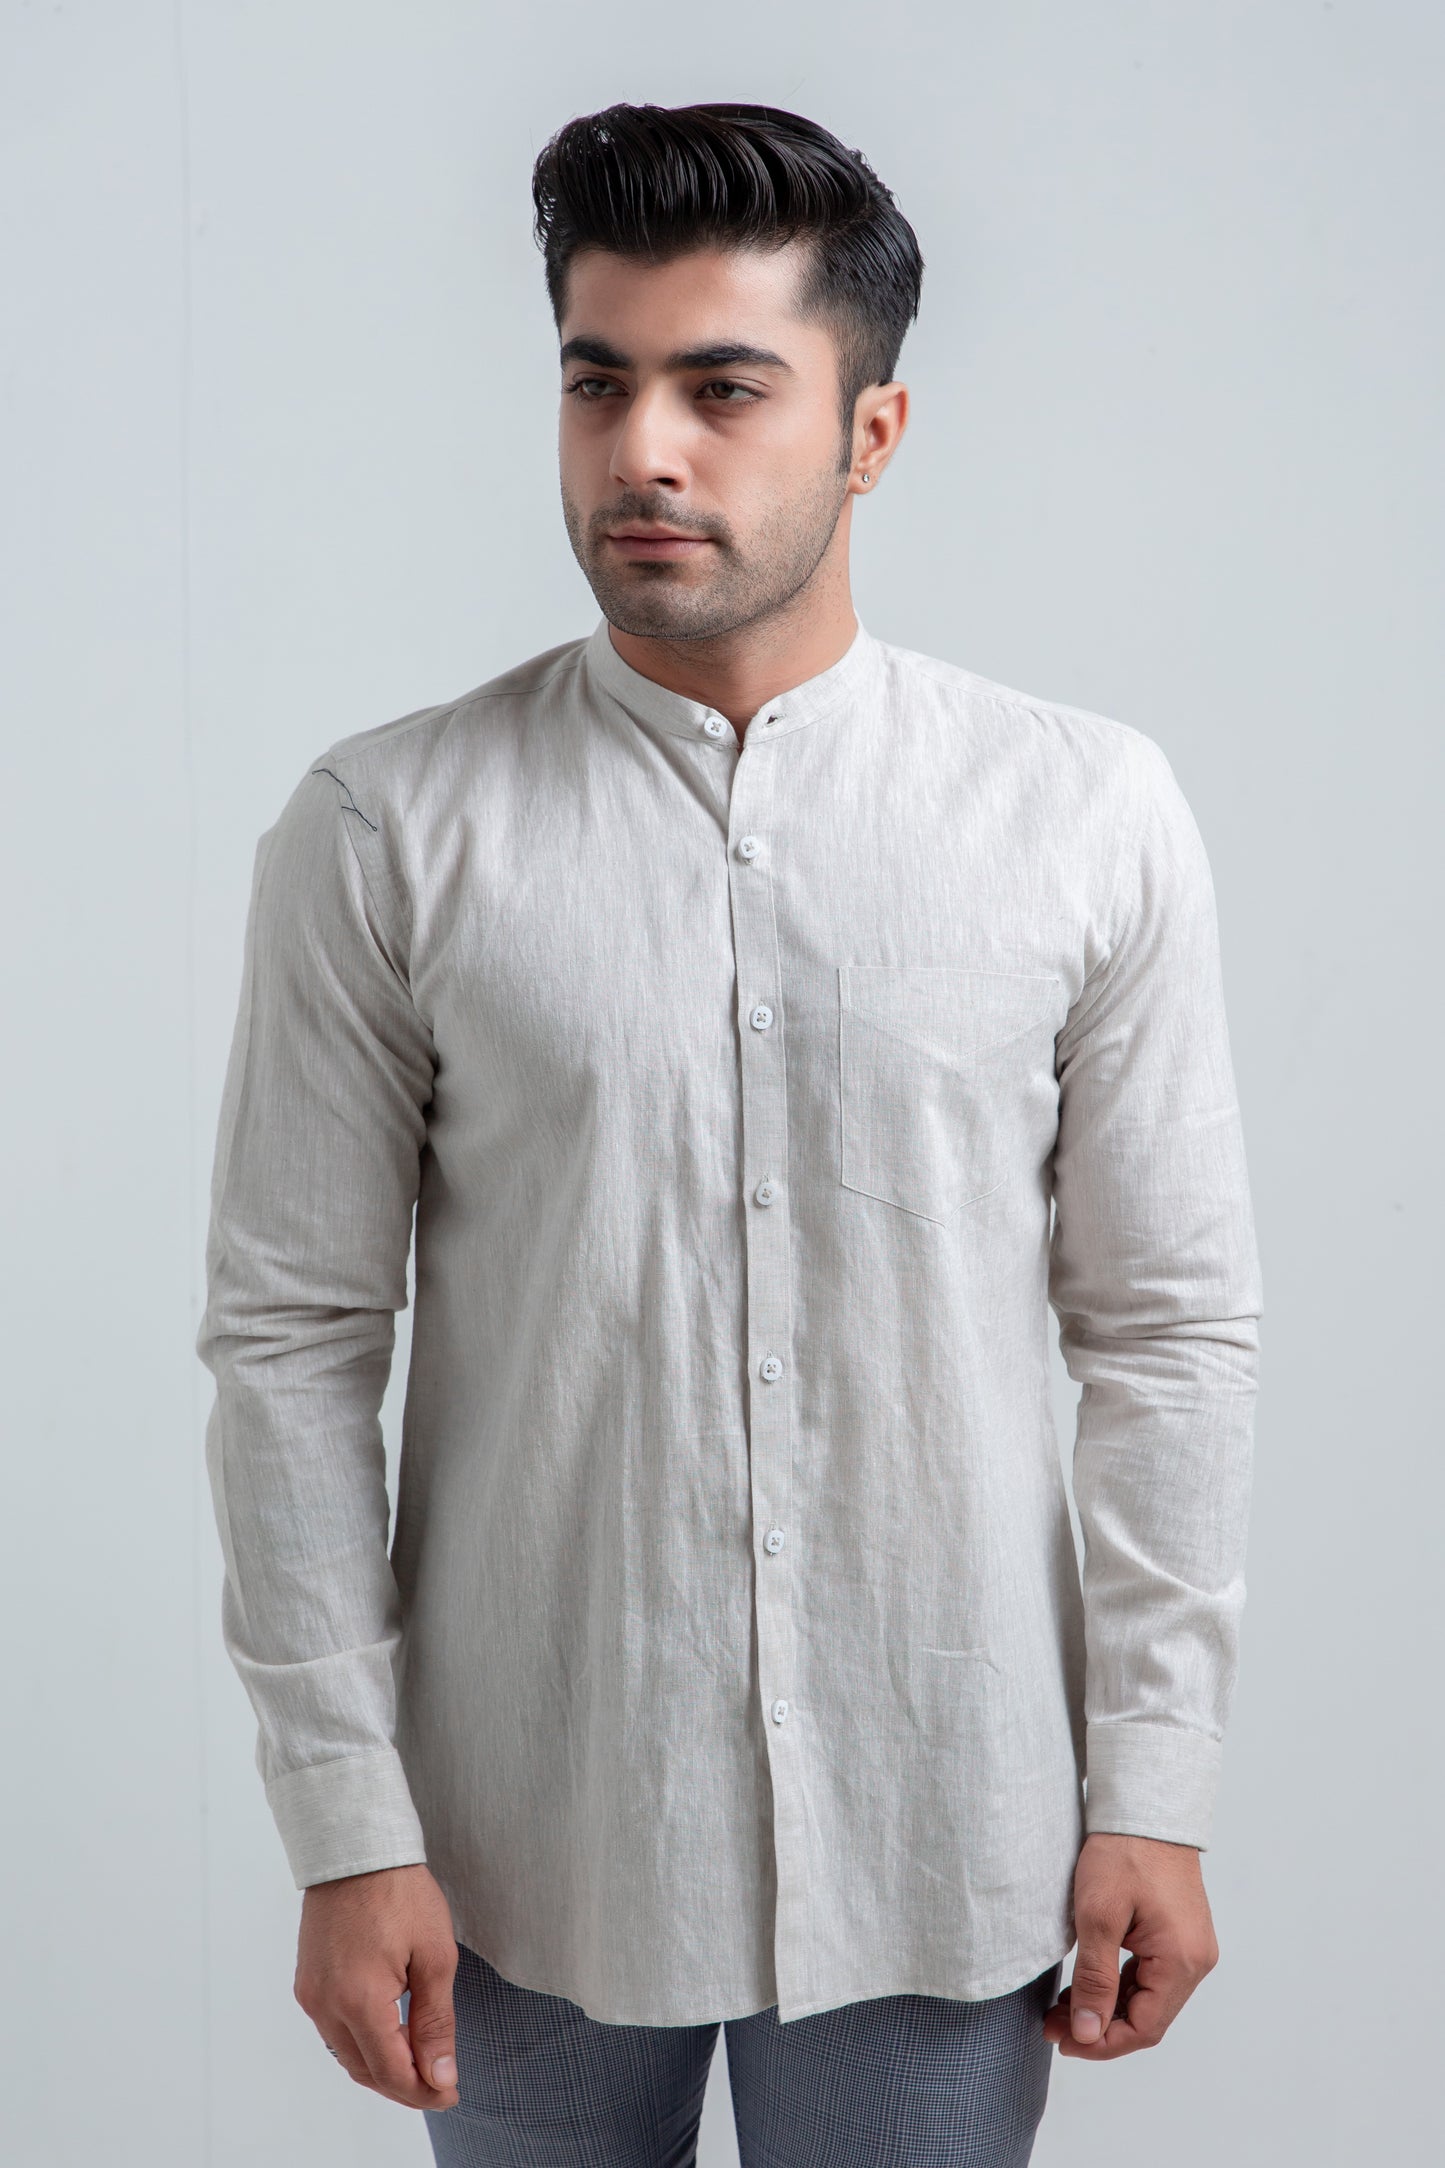 Beige Linen Shirt – Project Linen